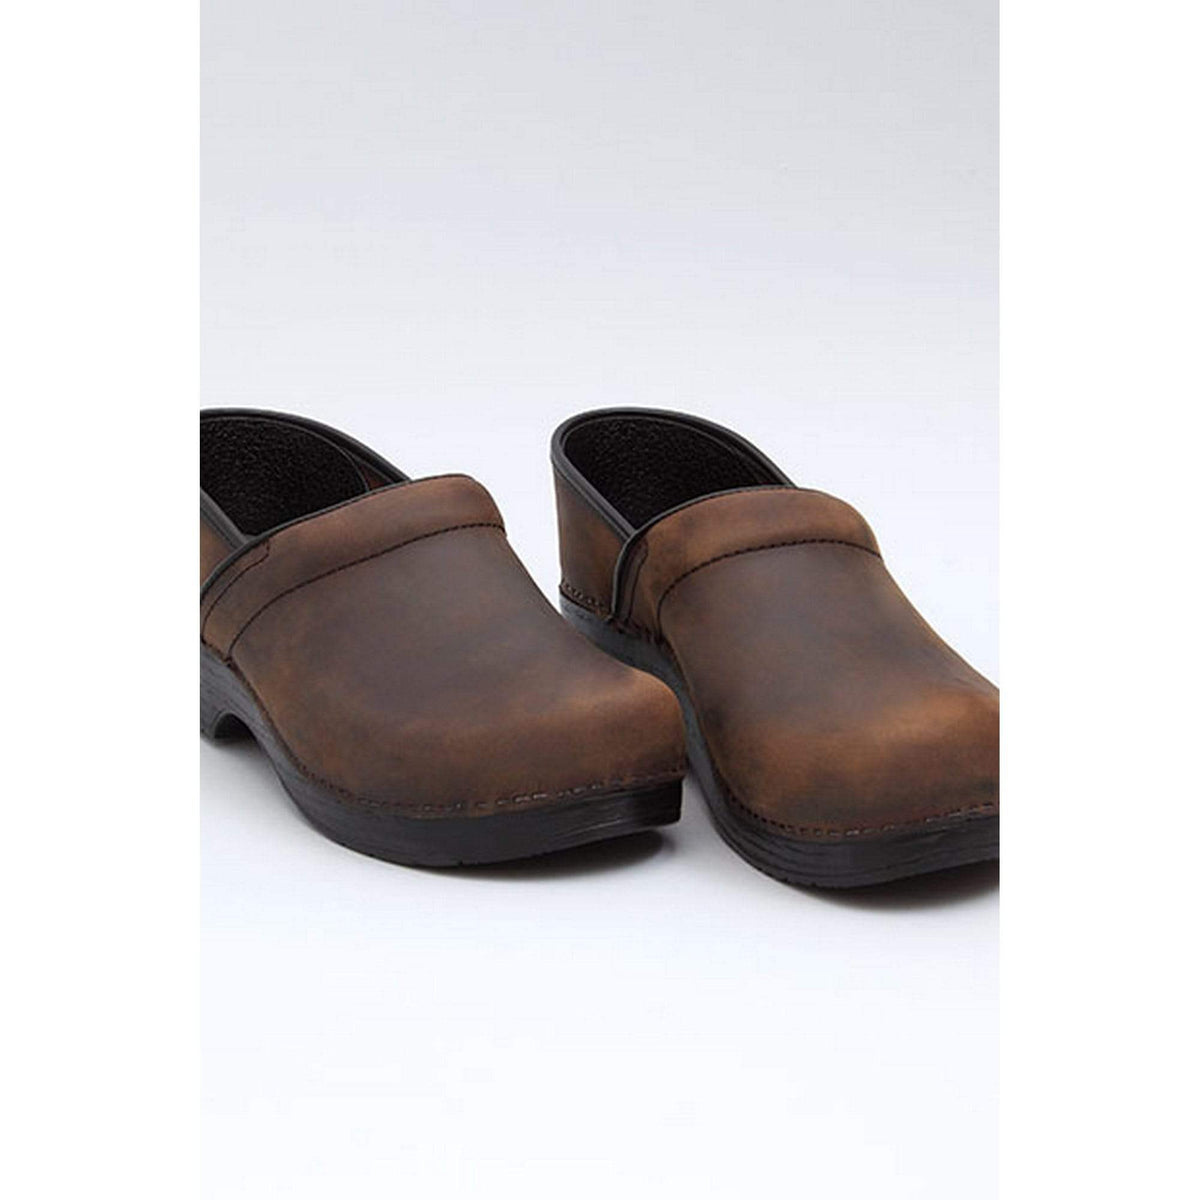 Dansko Men's Wide Shoes